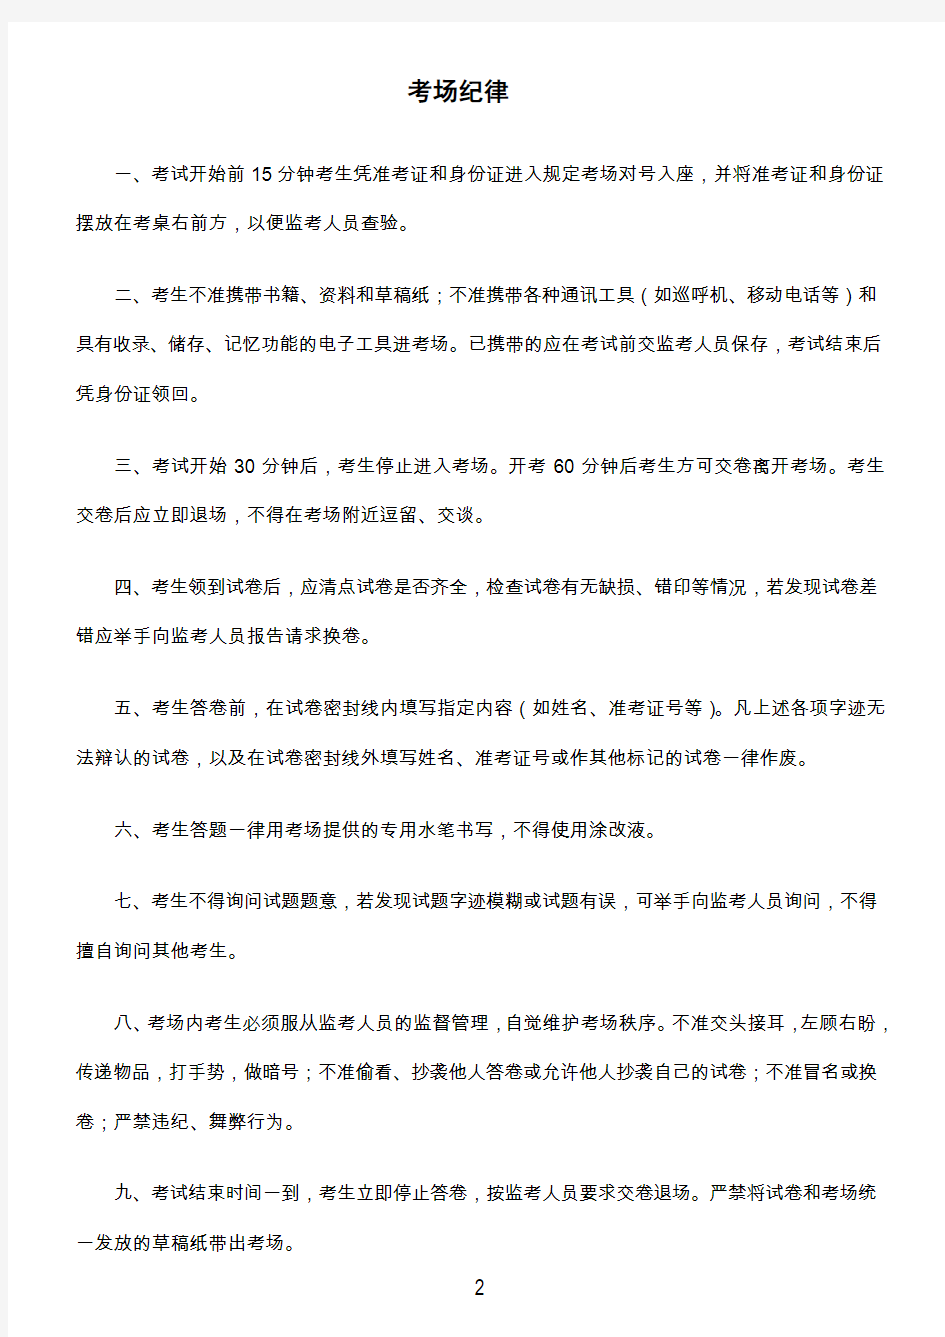 上海市工商行政管理局事业单位招聘考试须知